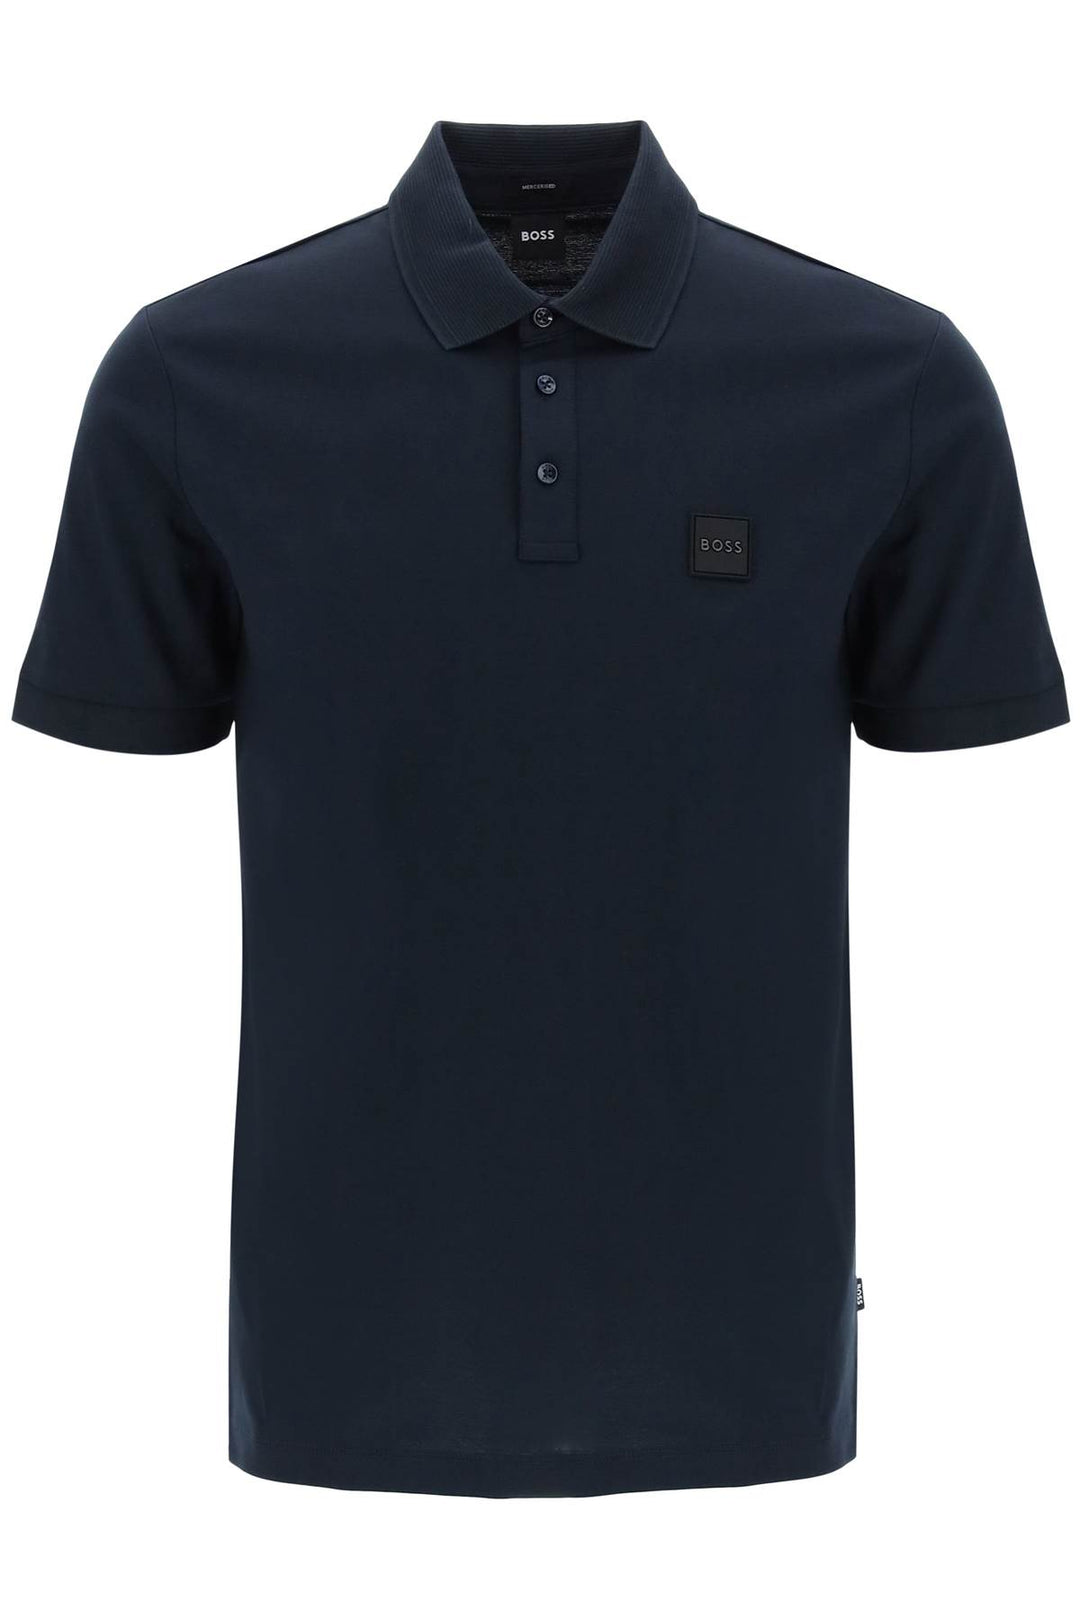 Boss Cotton Jersey Polo Shirt   Blu